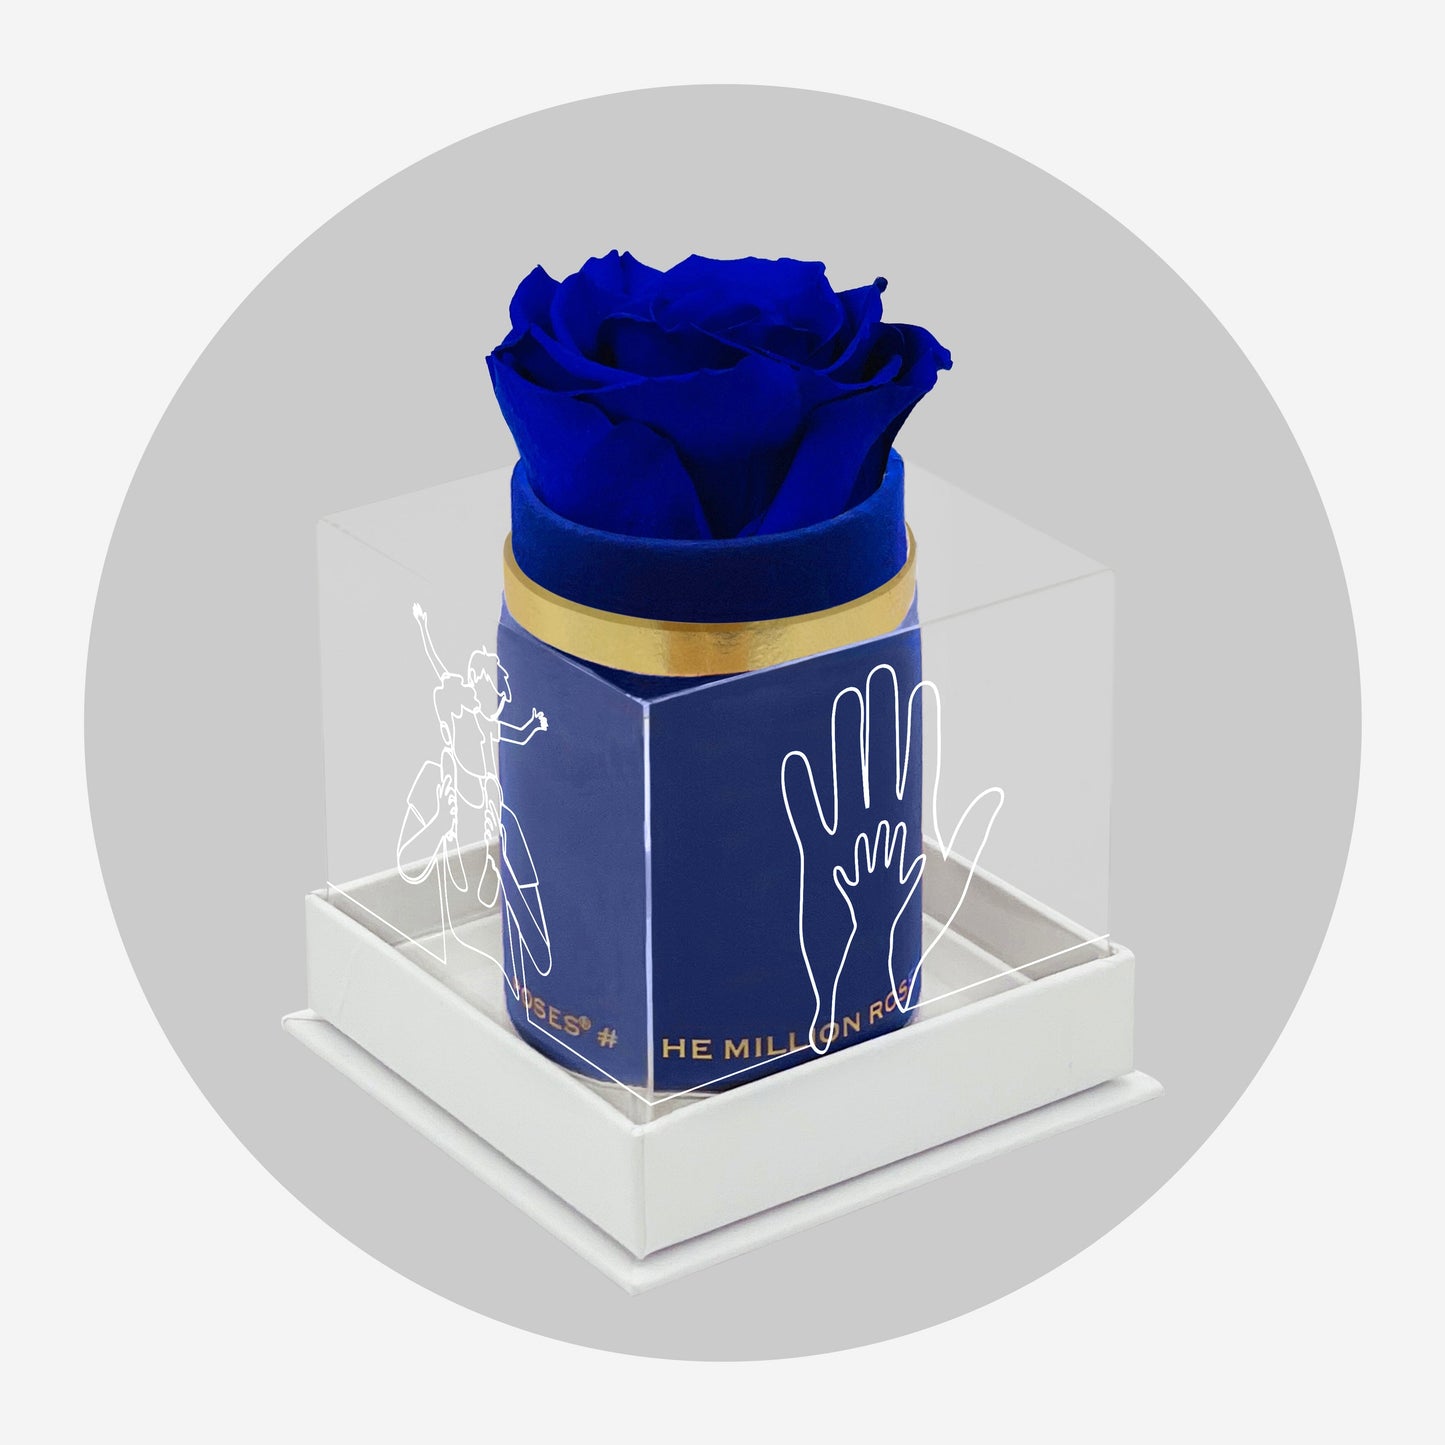 Single Královsky Modrý Suede Box | Limited Father's Love Edition | Královsky modrá růže